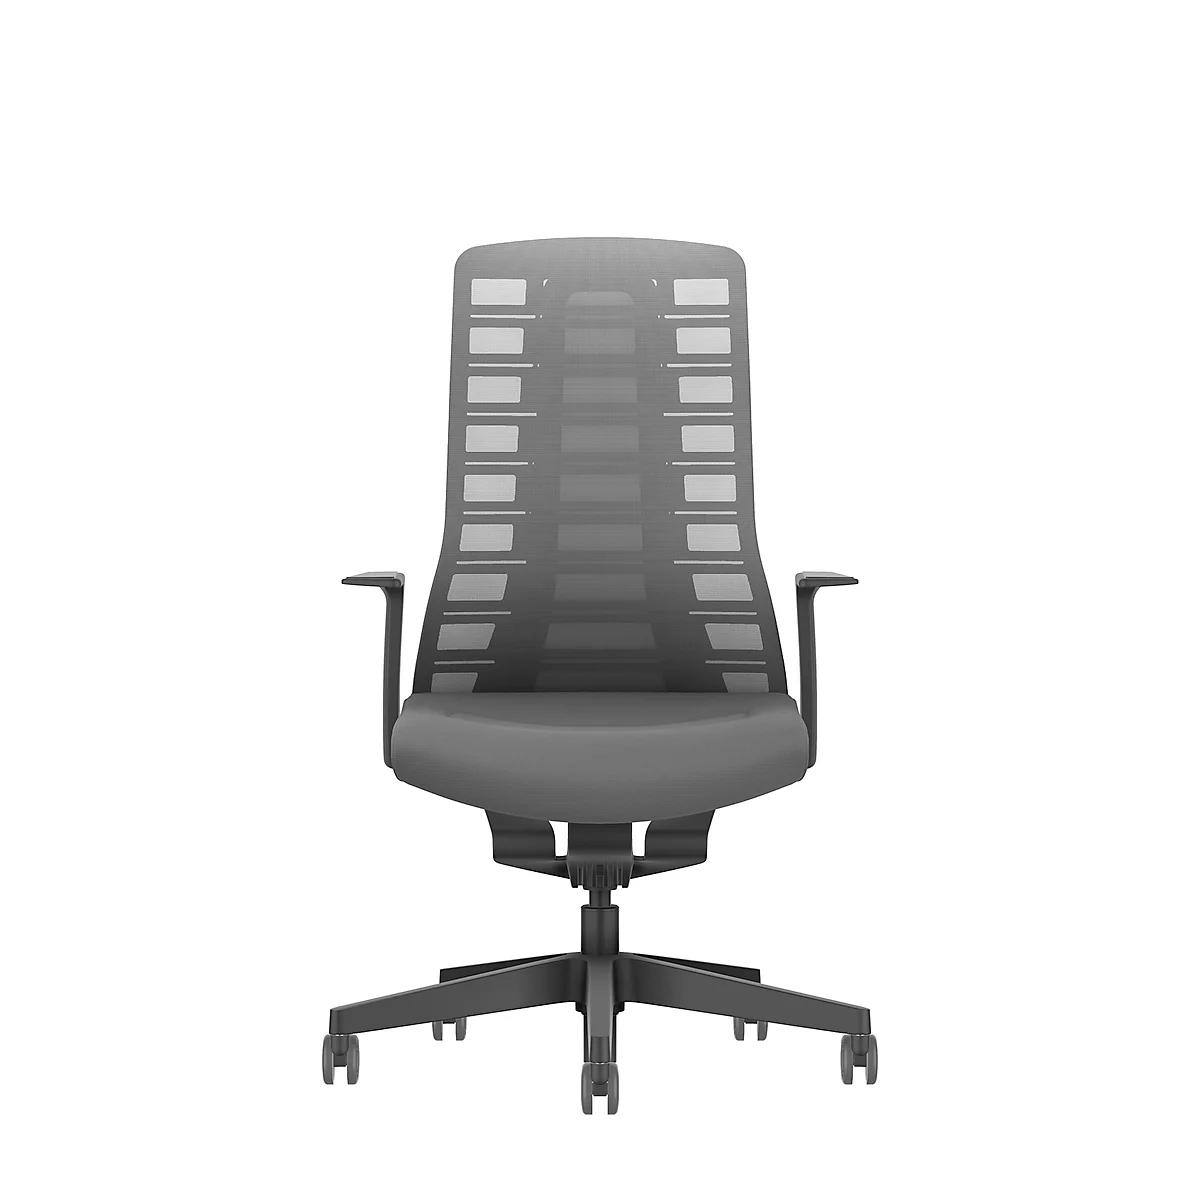 Interstuhl bureaustoel PUREis3, vaste armleuningen, 3D auto-synchroonmechanisme, kuipzitting, gazen rugleuning, ijzergrijs/zwart